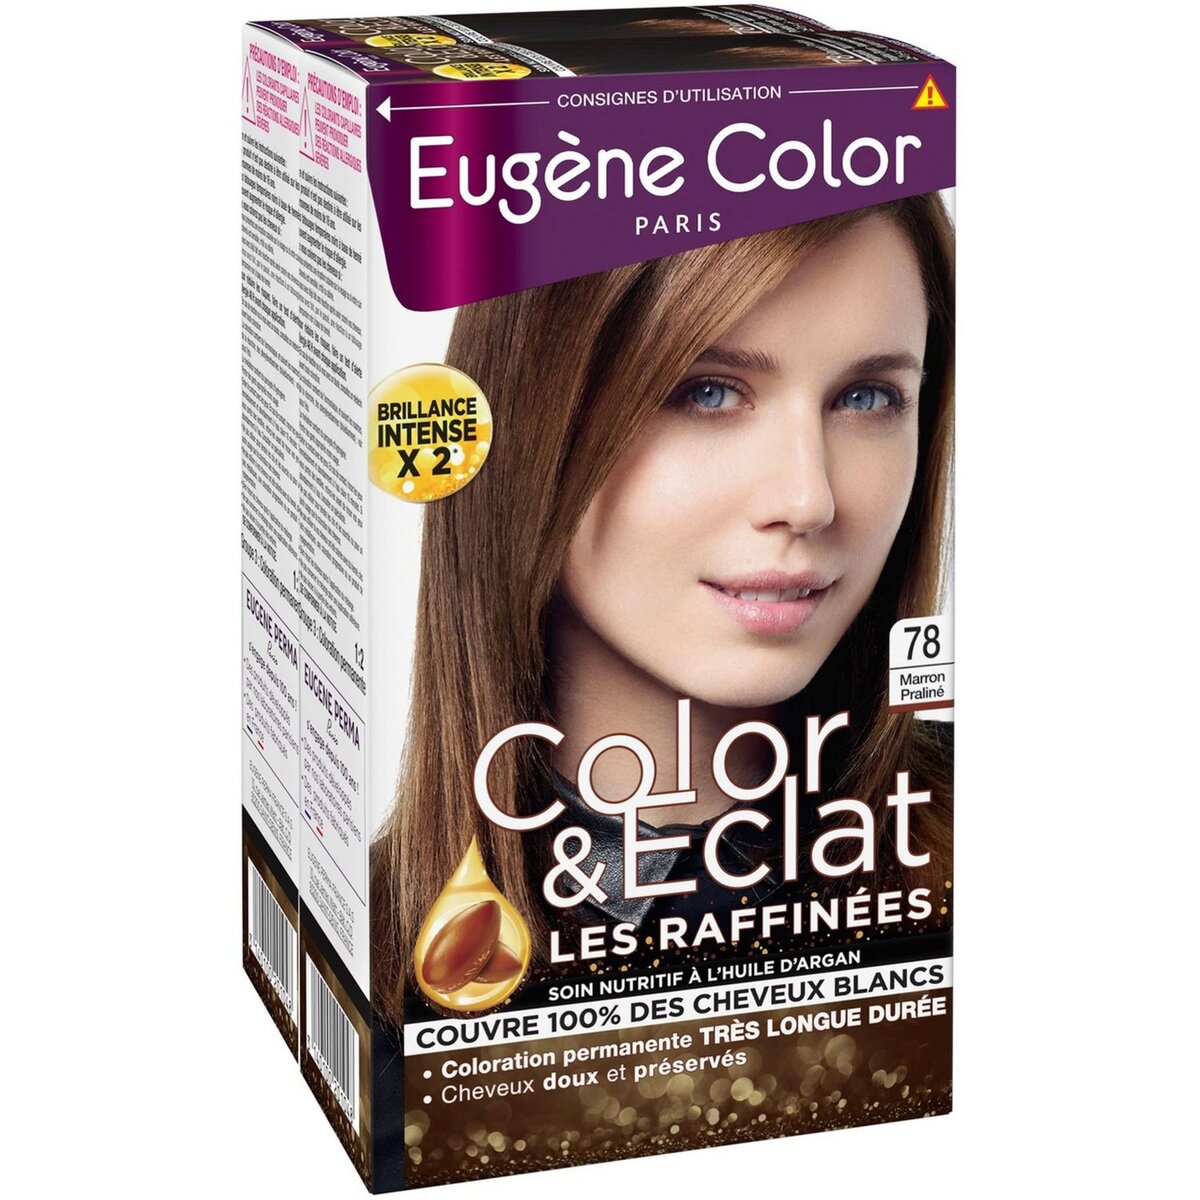 EUGENE COLOR Color & Eclat coloration permanente très longue durée 78 marron praliné 2x3 produits 2 kits